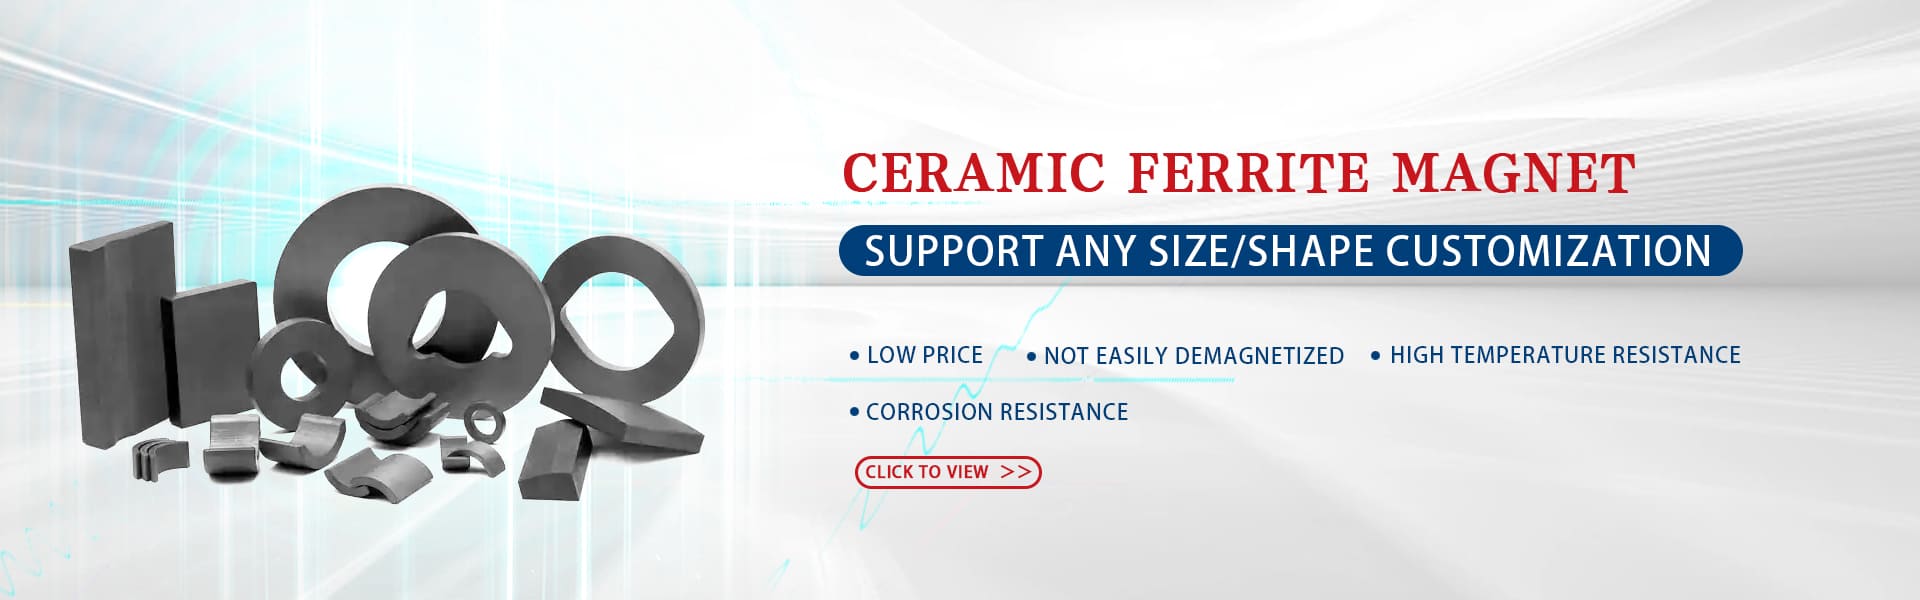 Ceramic ferrite magnets